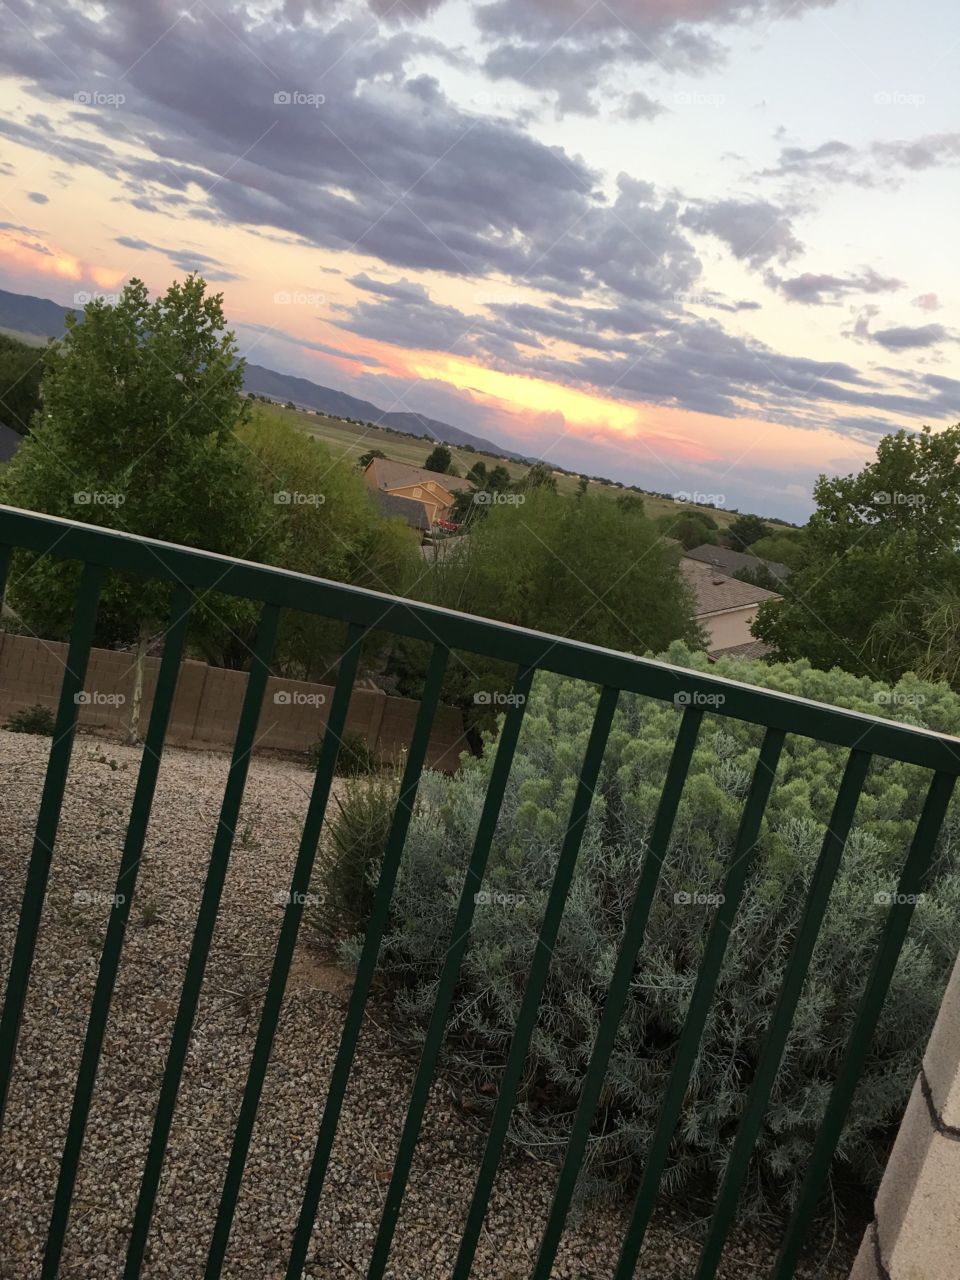 Sunset 
Bushes
Life
Fence

